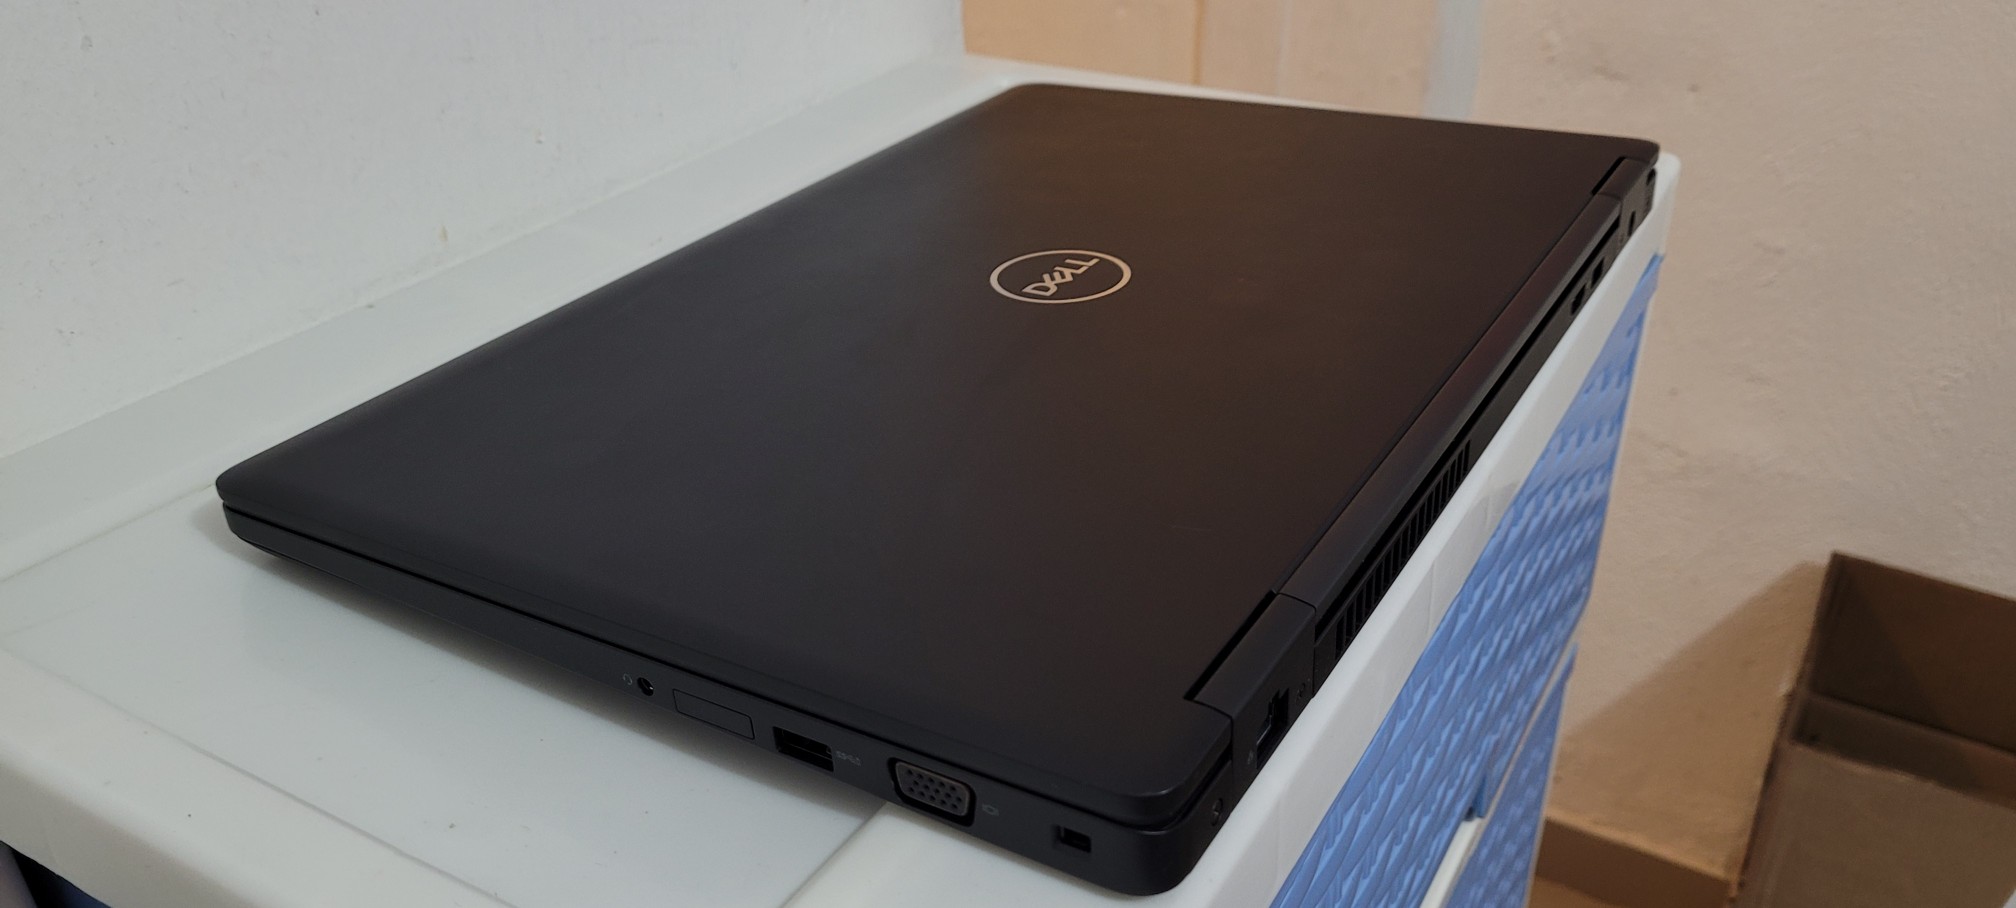 computadoras y laptops - Dell 5570 17 Pulg Core i5 6ta Gen Ram 8gb ddr4 Disco 128gb SSD Y 320GB New 2